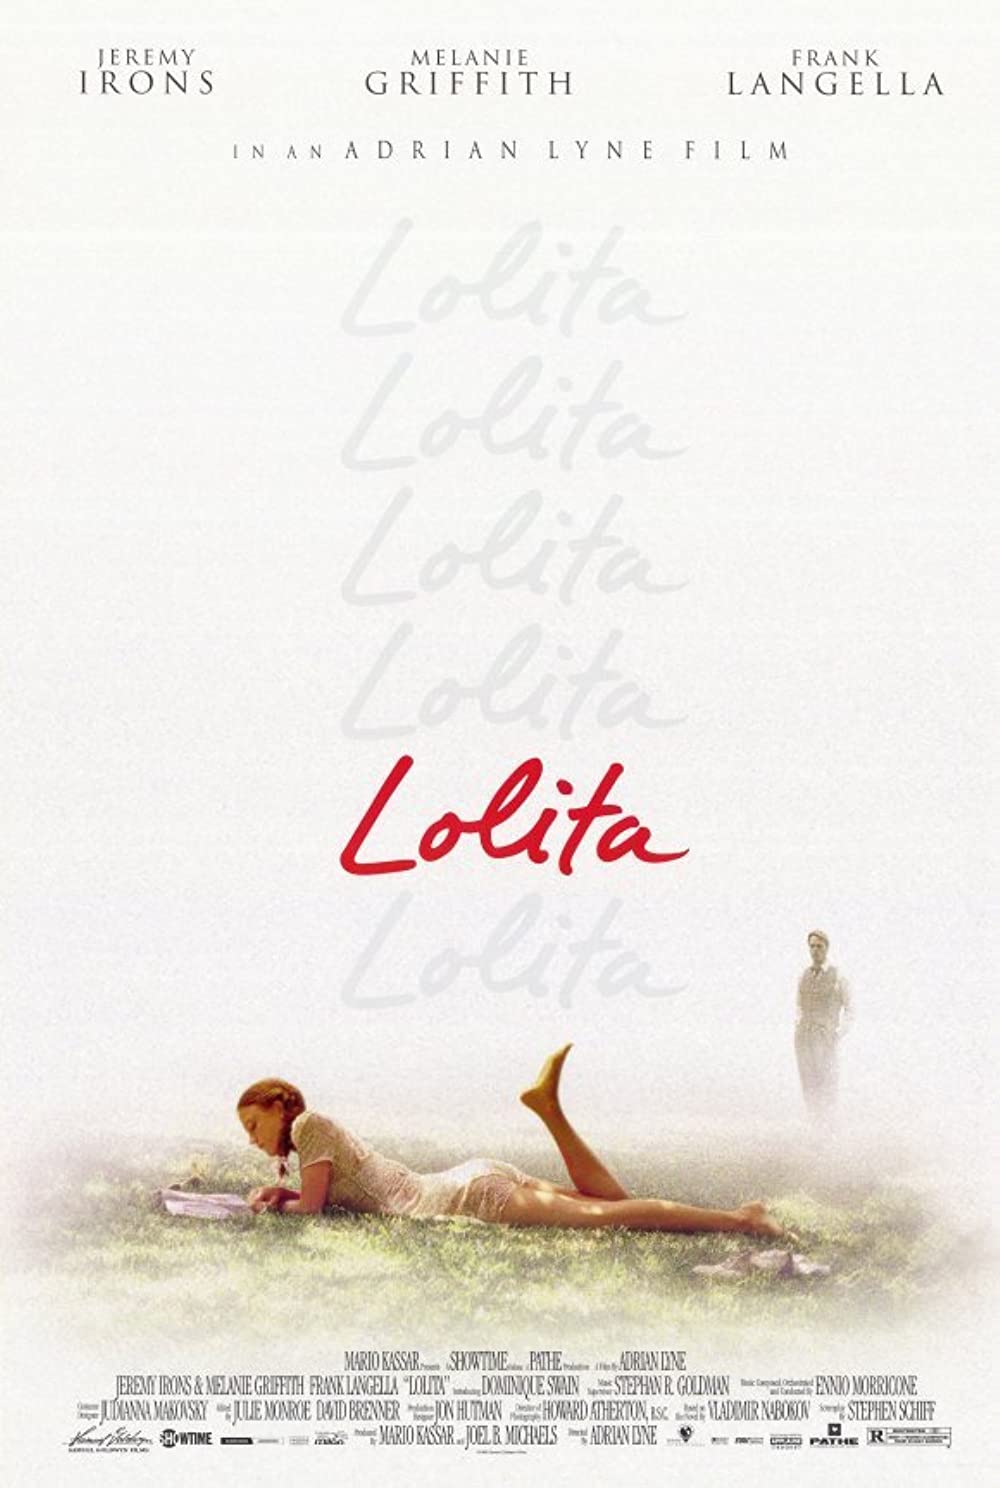 Filmbeschreibung zu Lolita